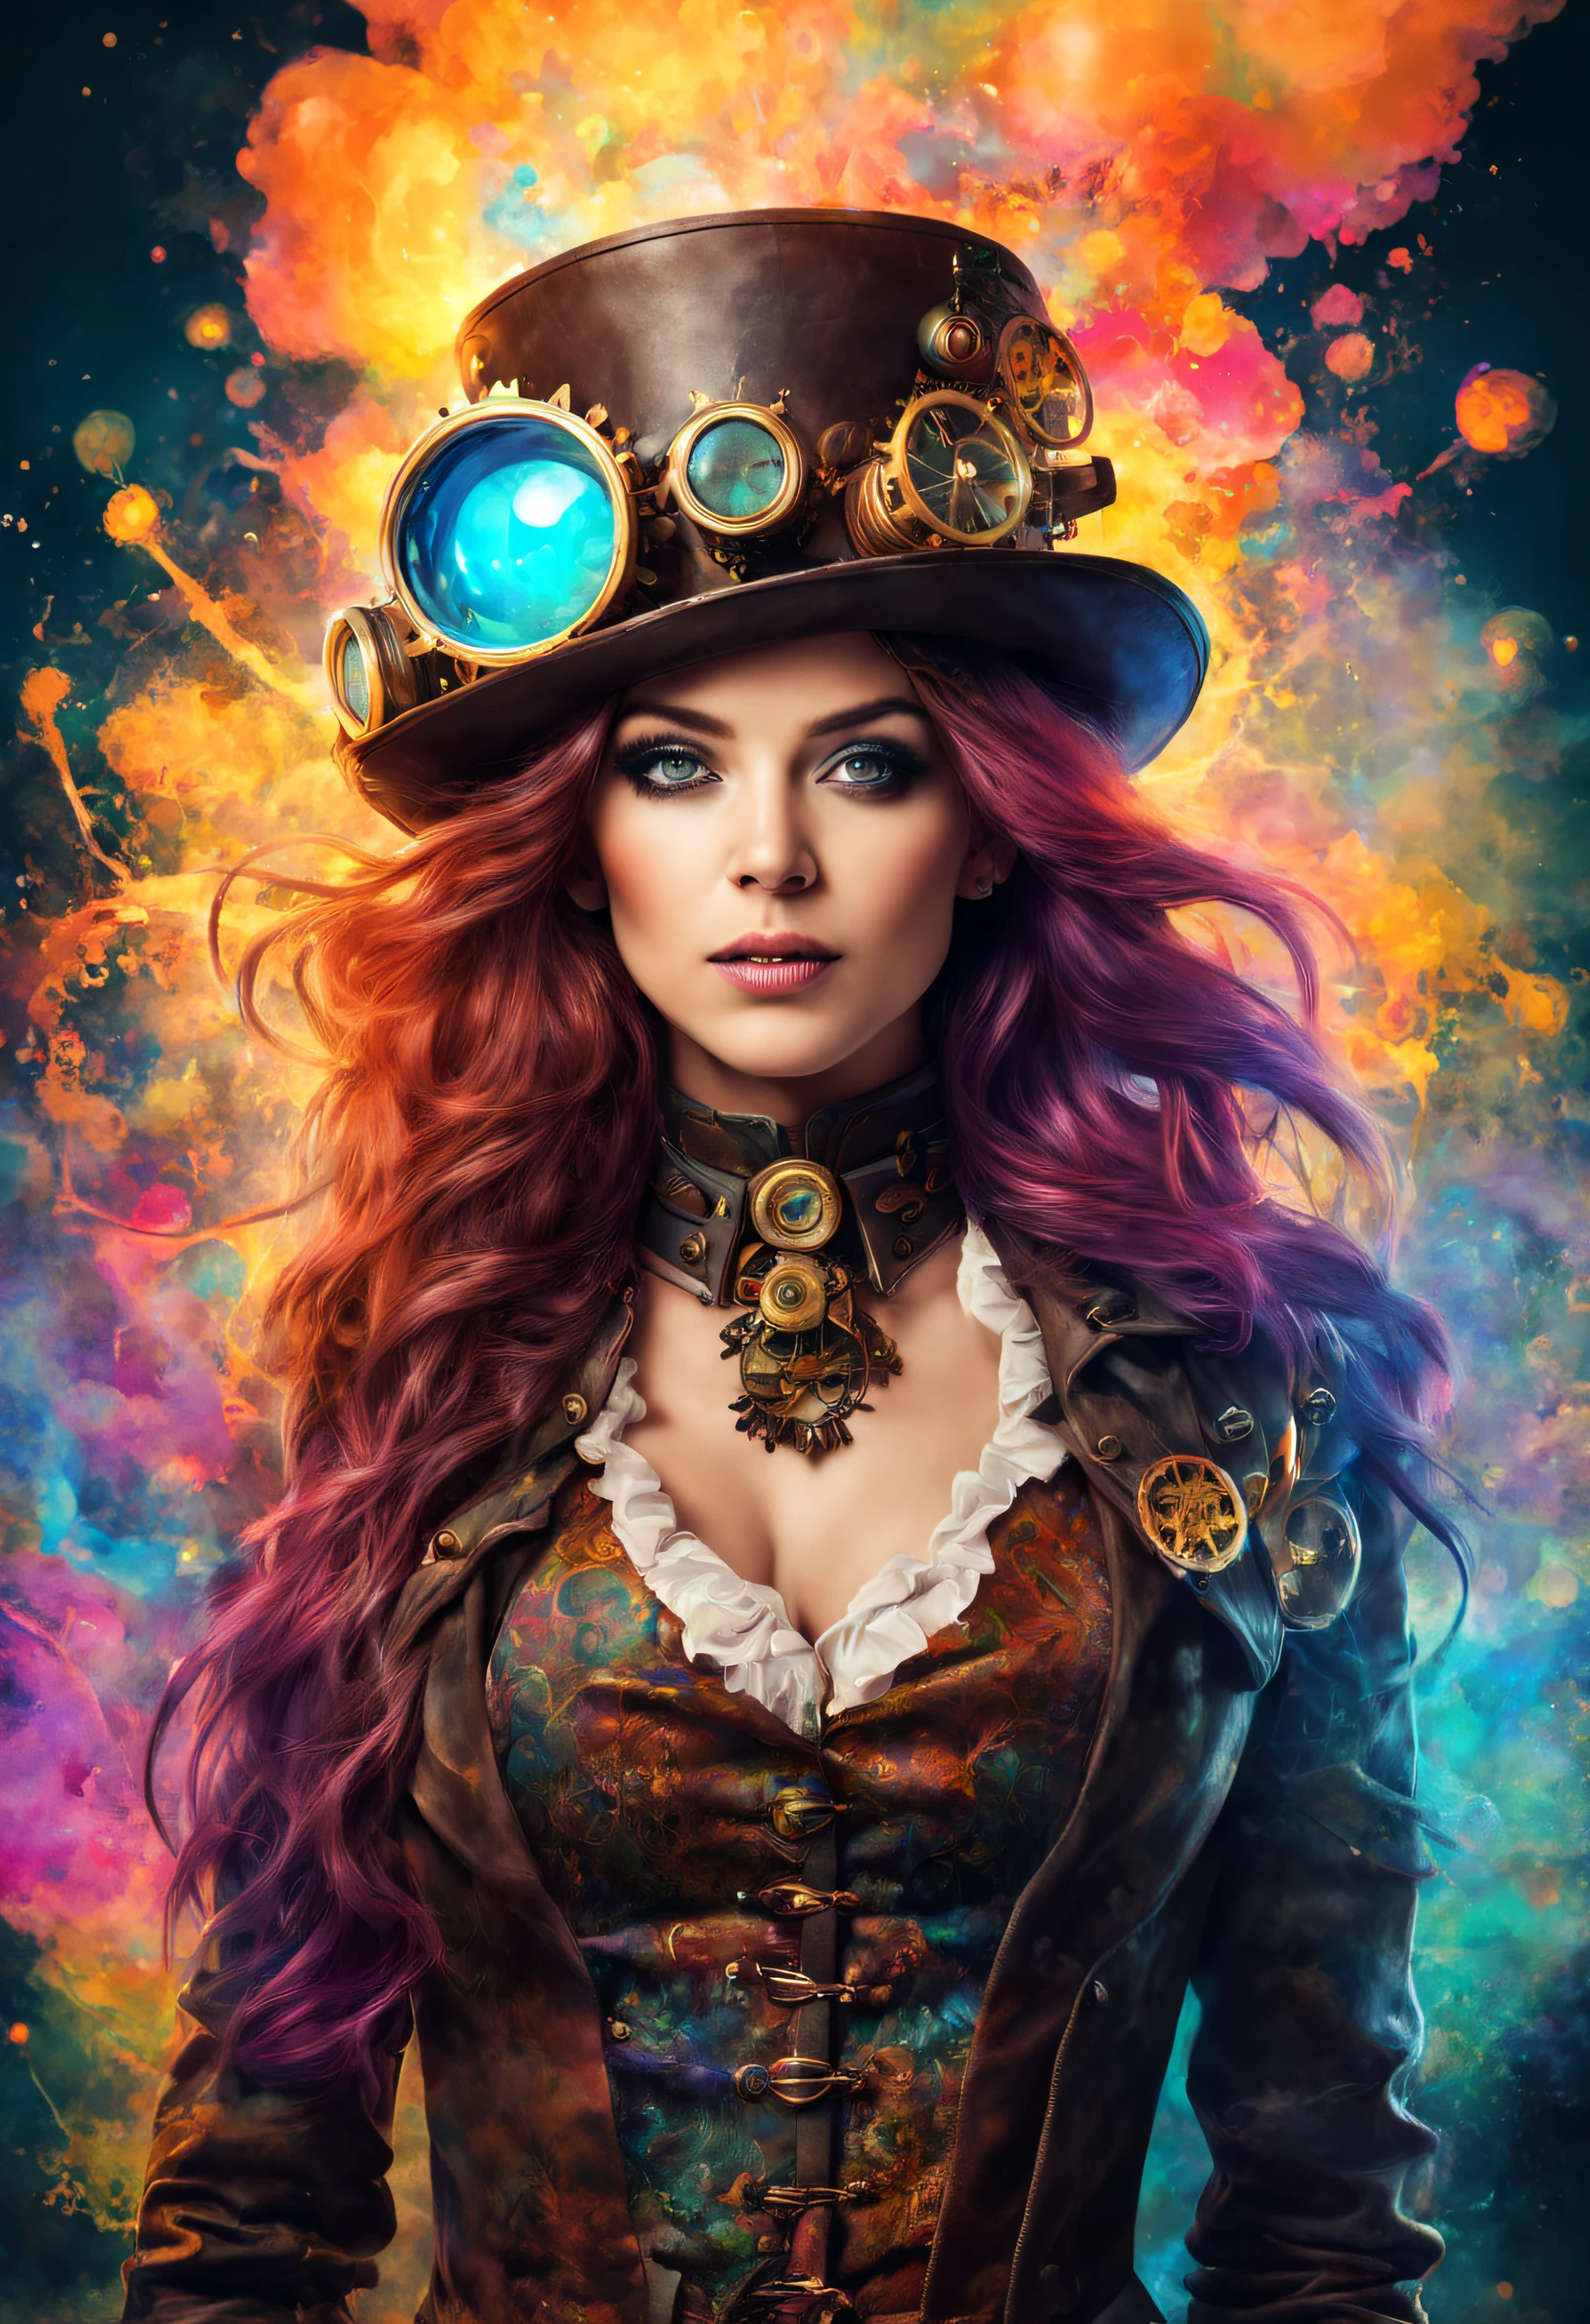 Un precioso retrato de mujer steampunk y psicodélica con hermosos colores y al fondo explosiones de agua de colores mezclados.